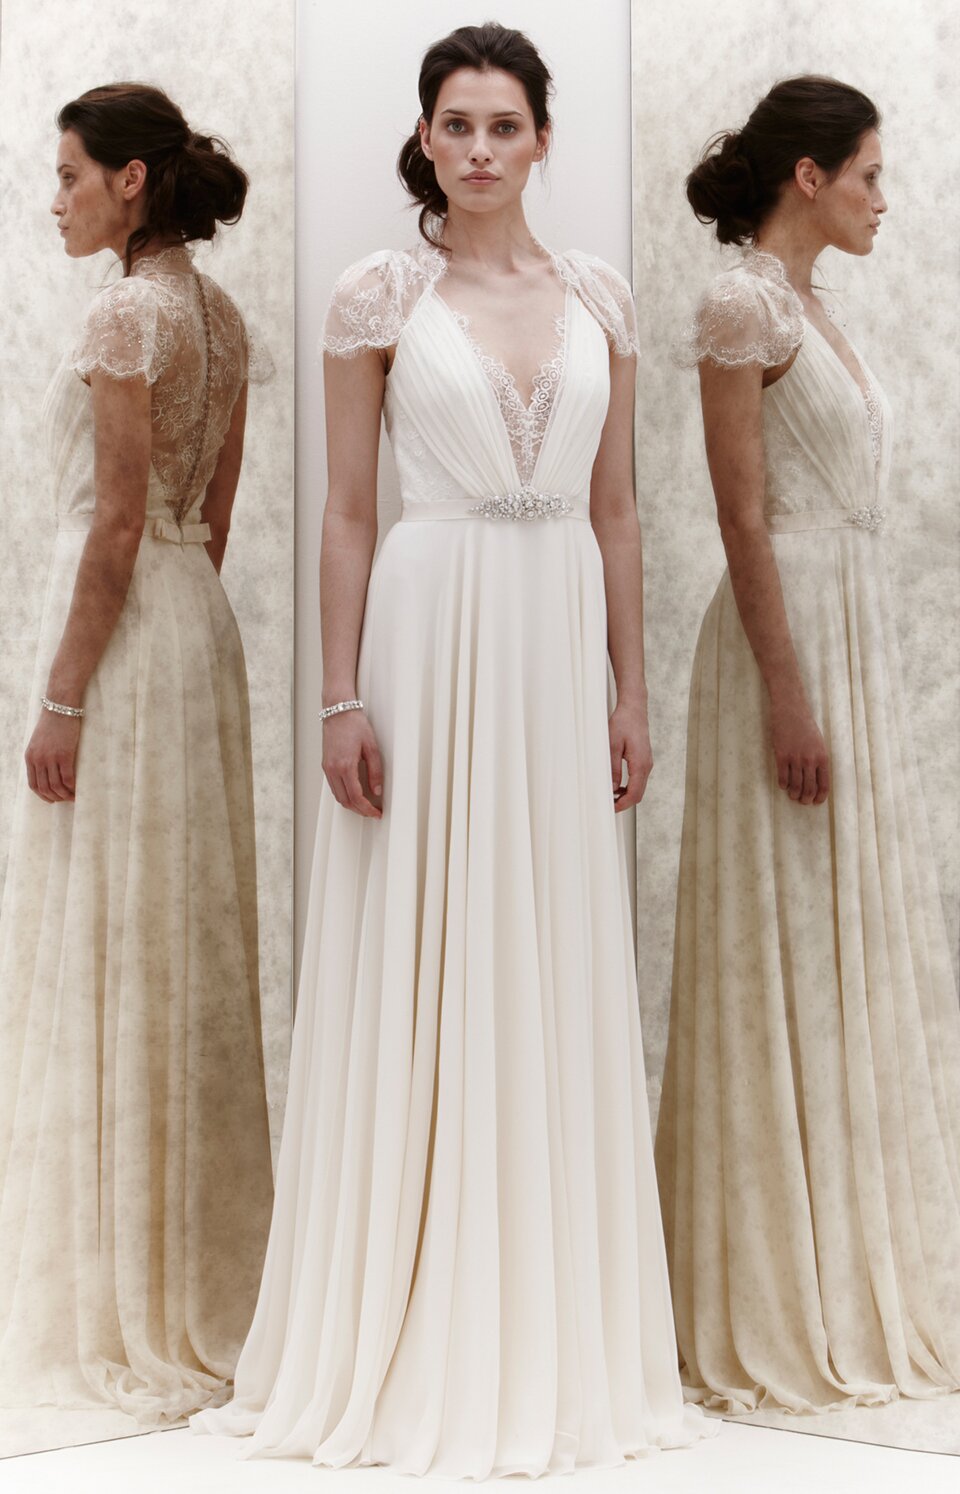 Jenny Packham inspired wedding dresses Photo - 5